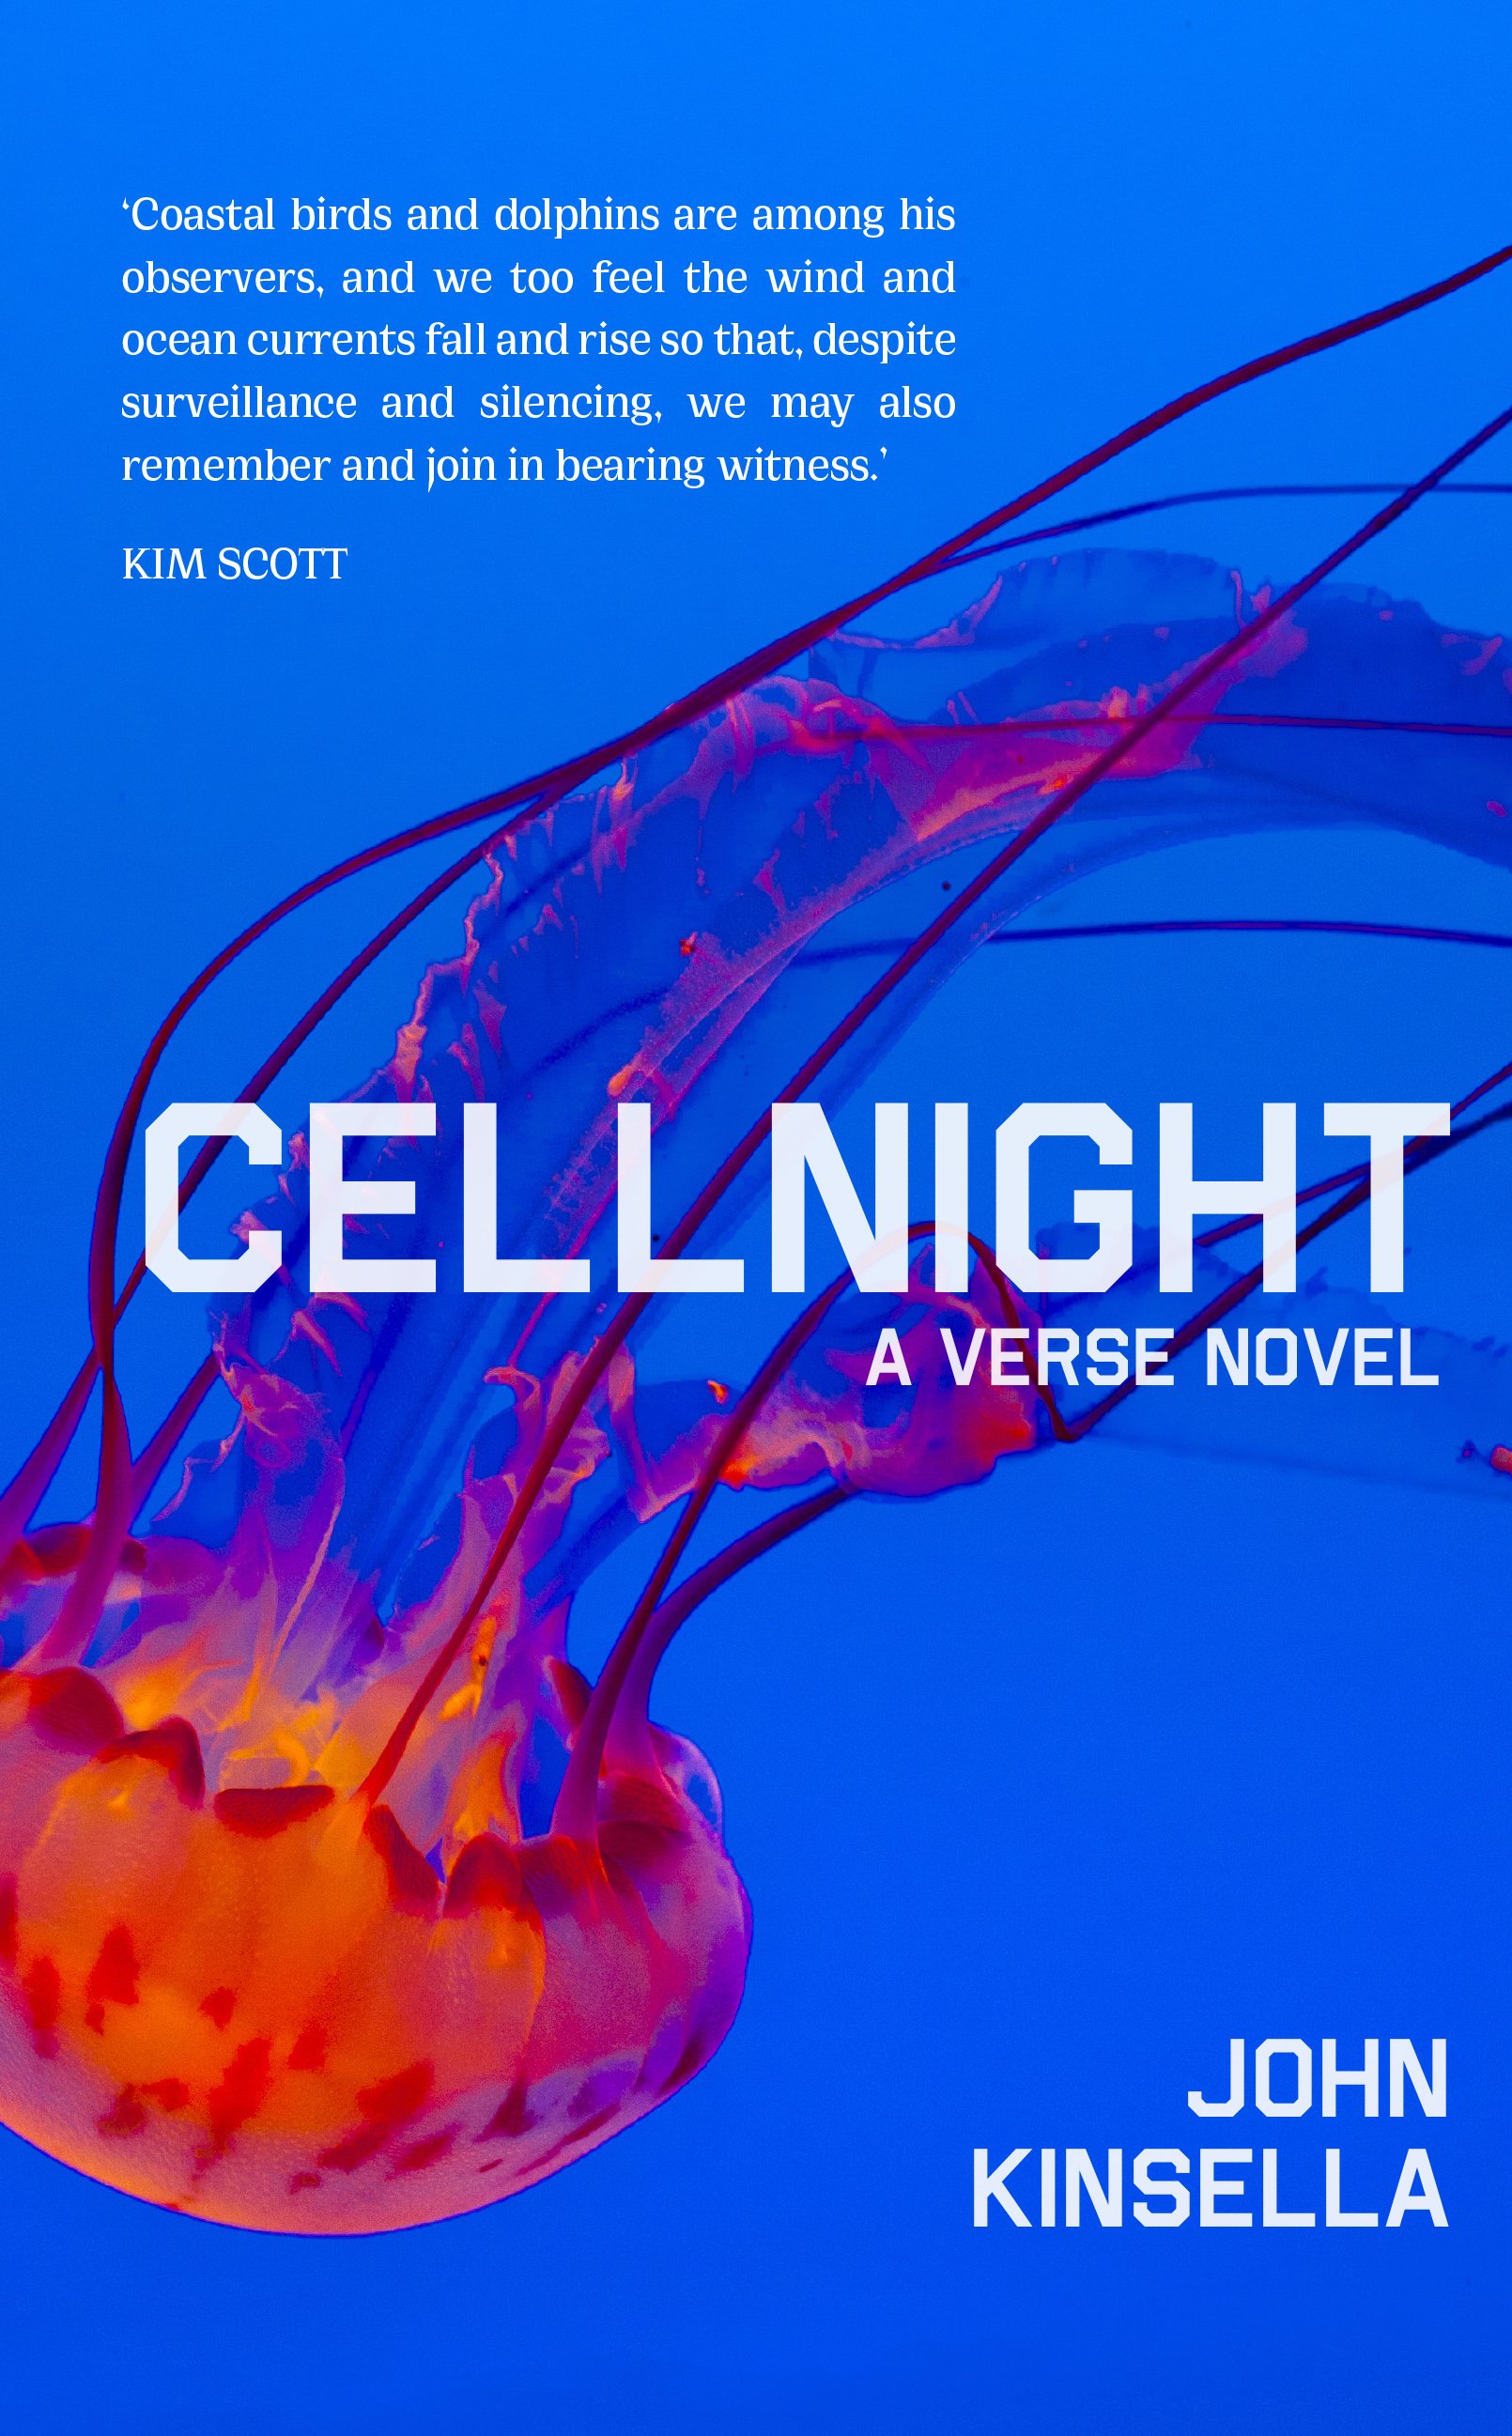 Cellnight by John Kinsella